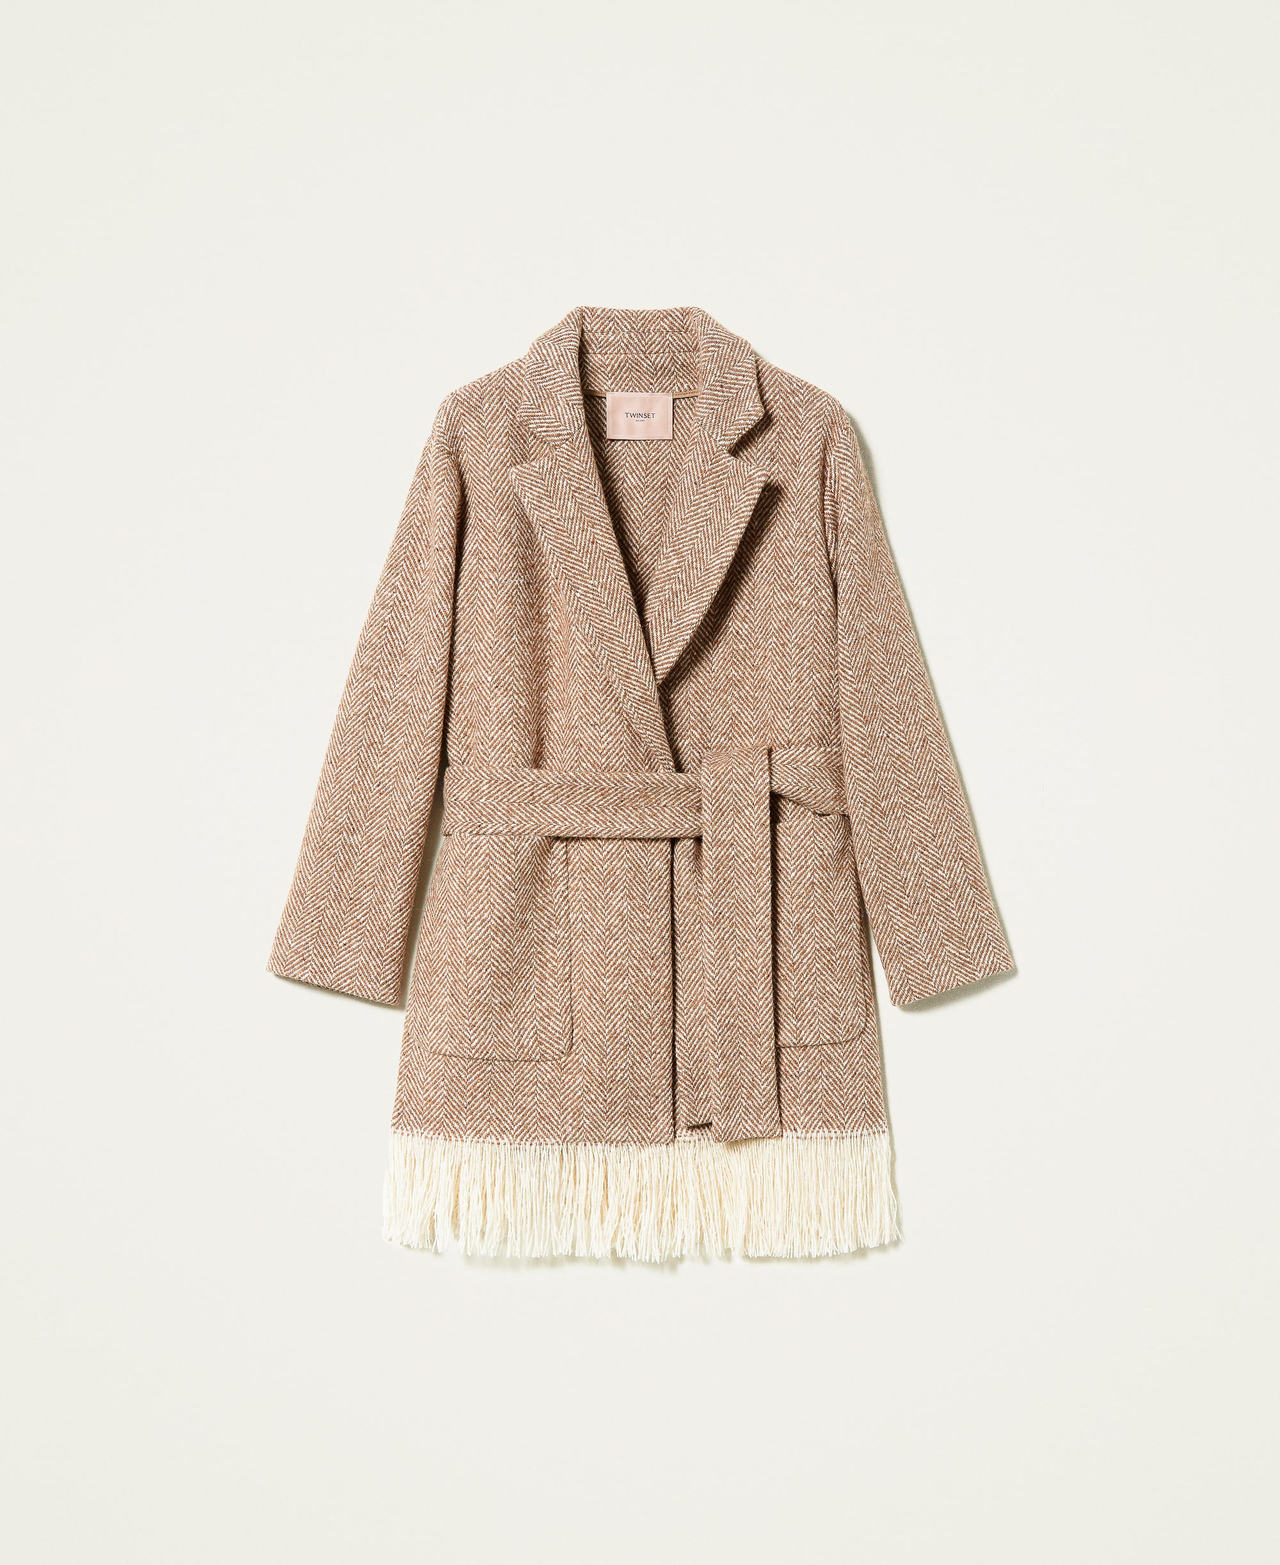 Manteau en drap à chevrons avec franges dans le bas Chevron Marron « Rhum / Blanc « Neige » Femme 212TP2611-0S